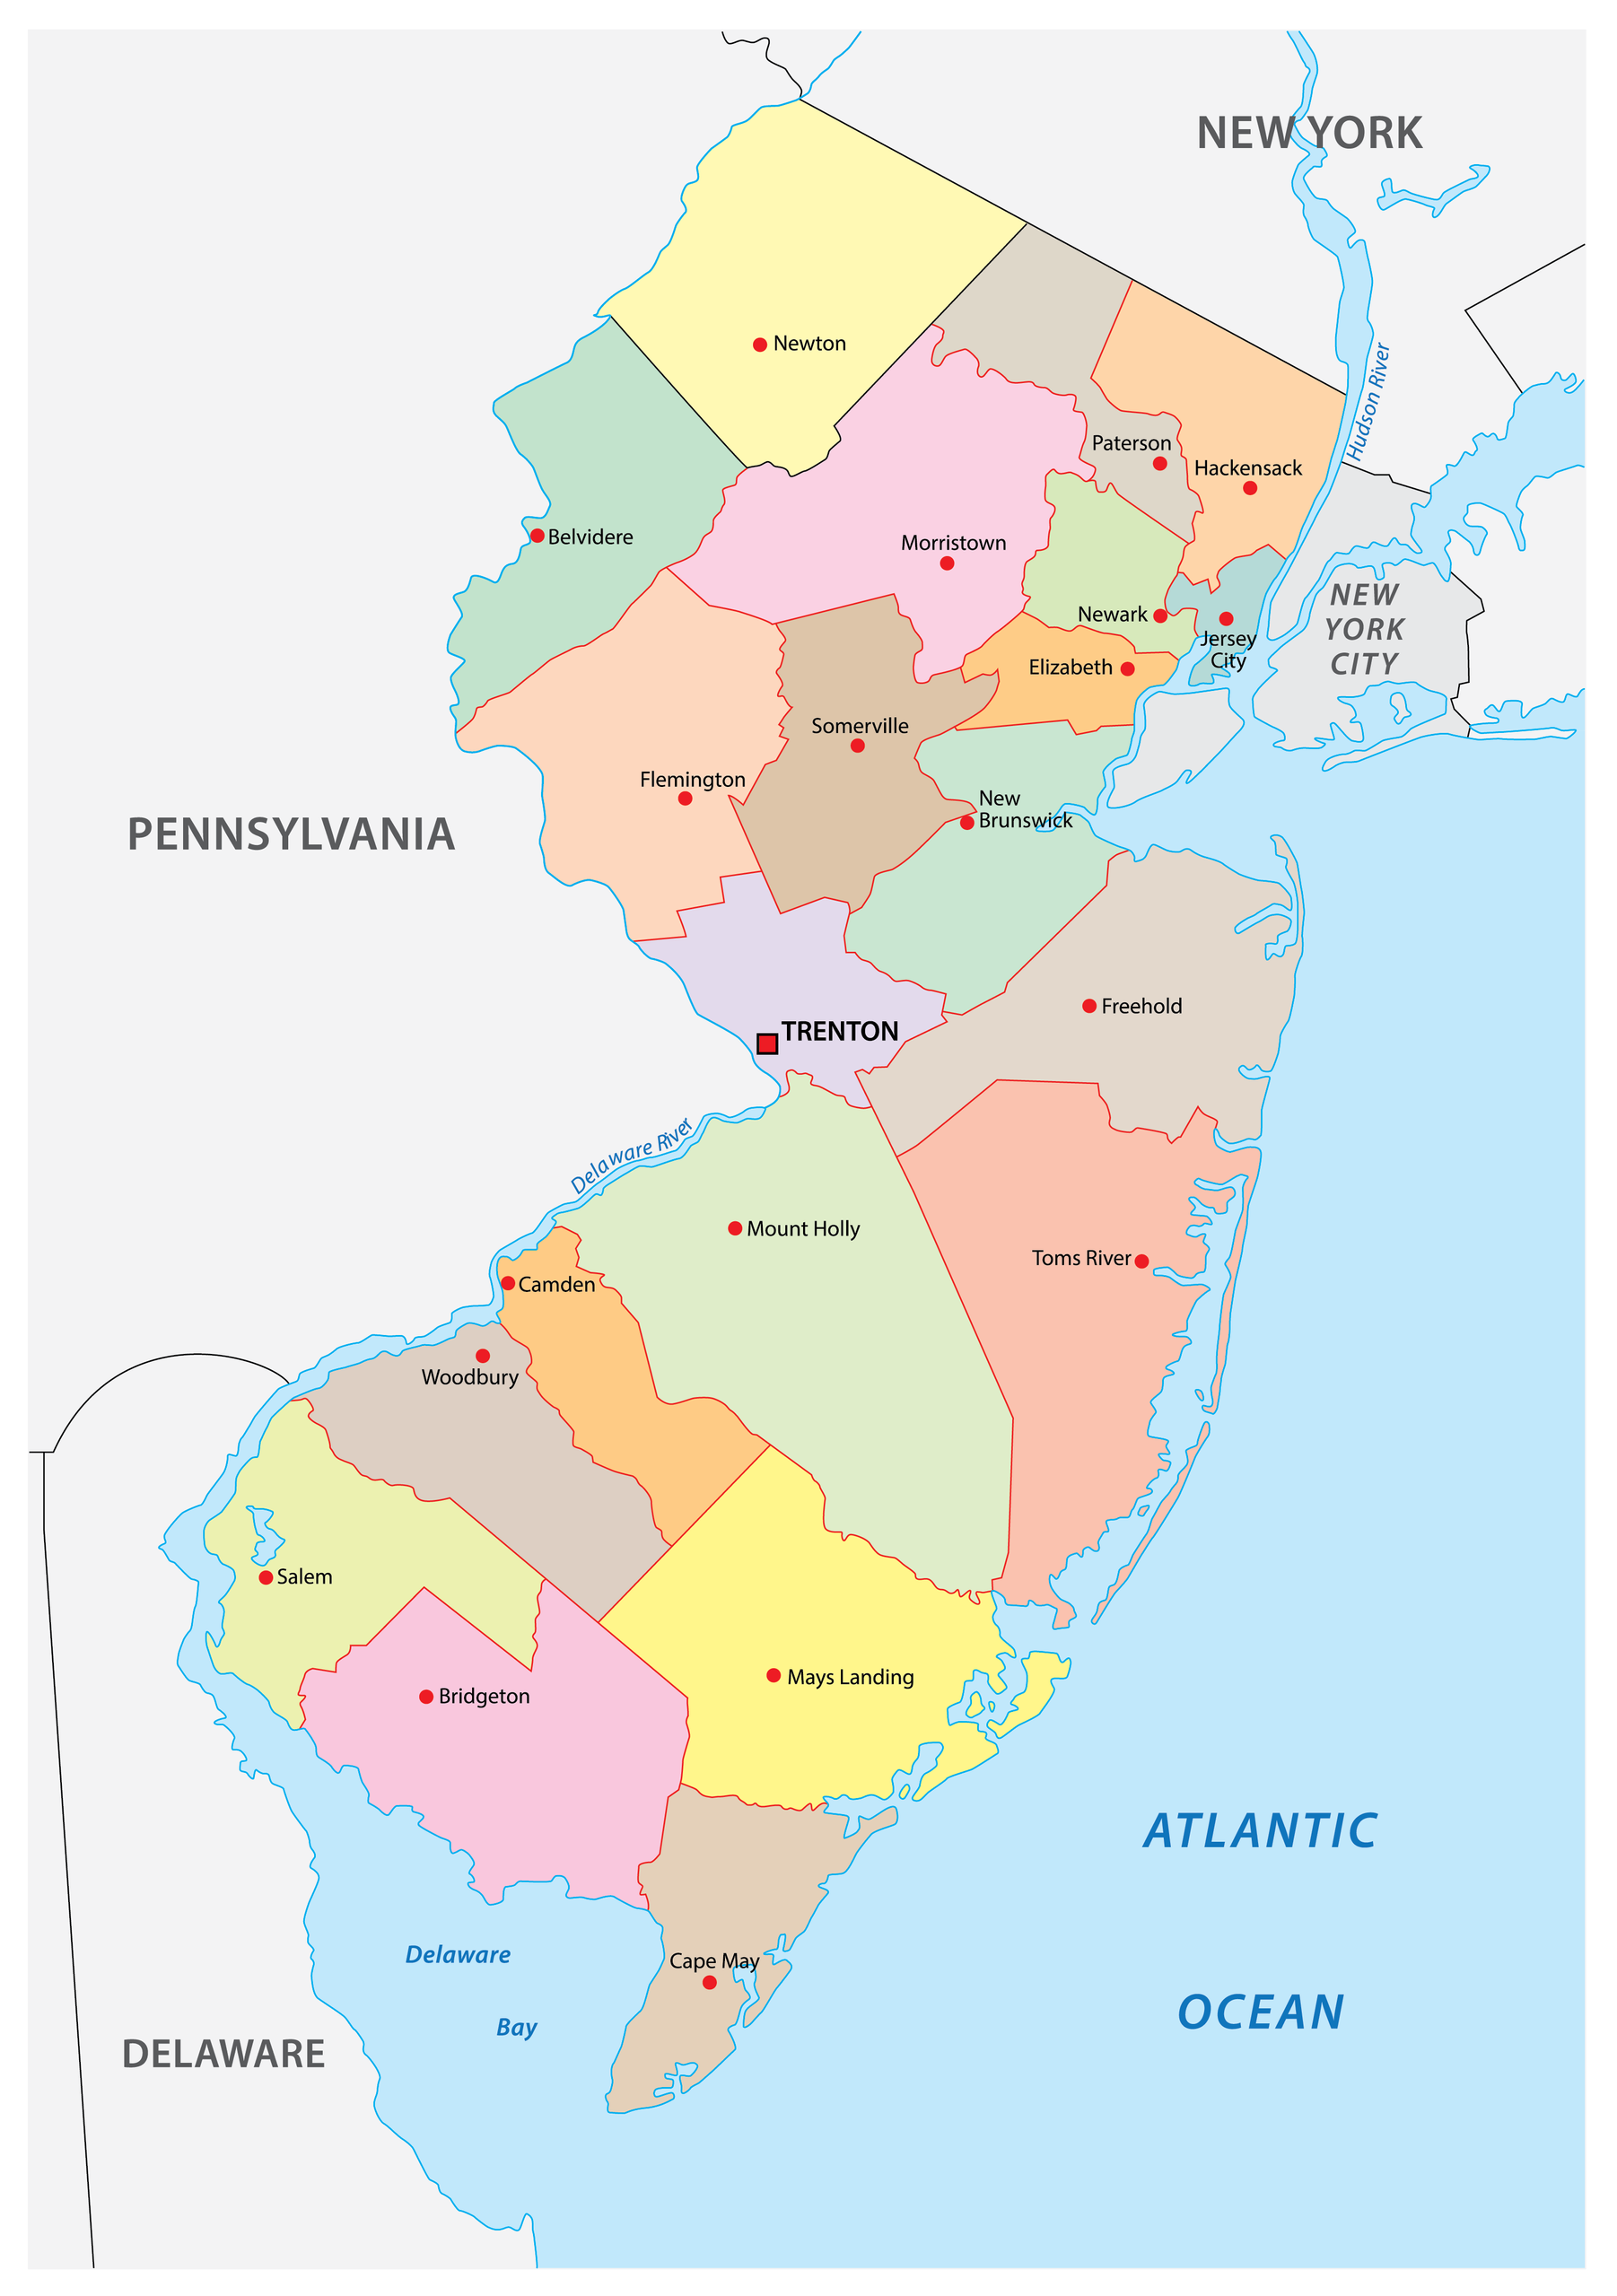 https://www.worldatlas.com/upload/c0/78/96/new-jersey-counties-map.png